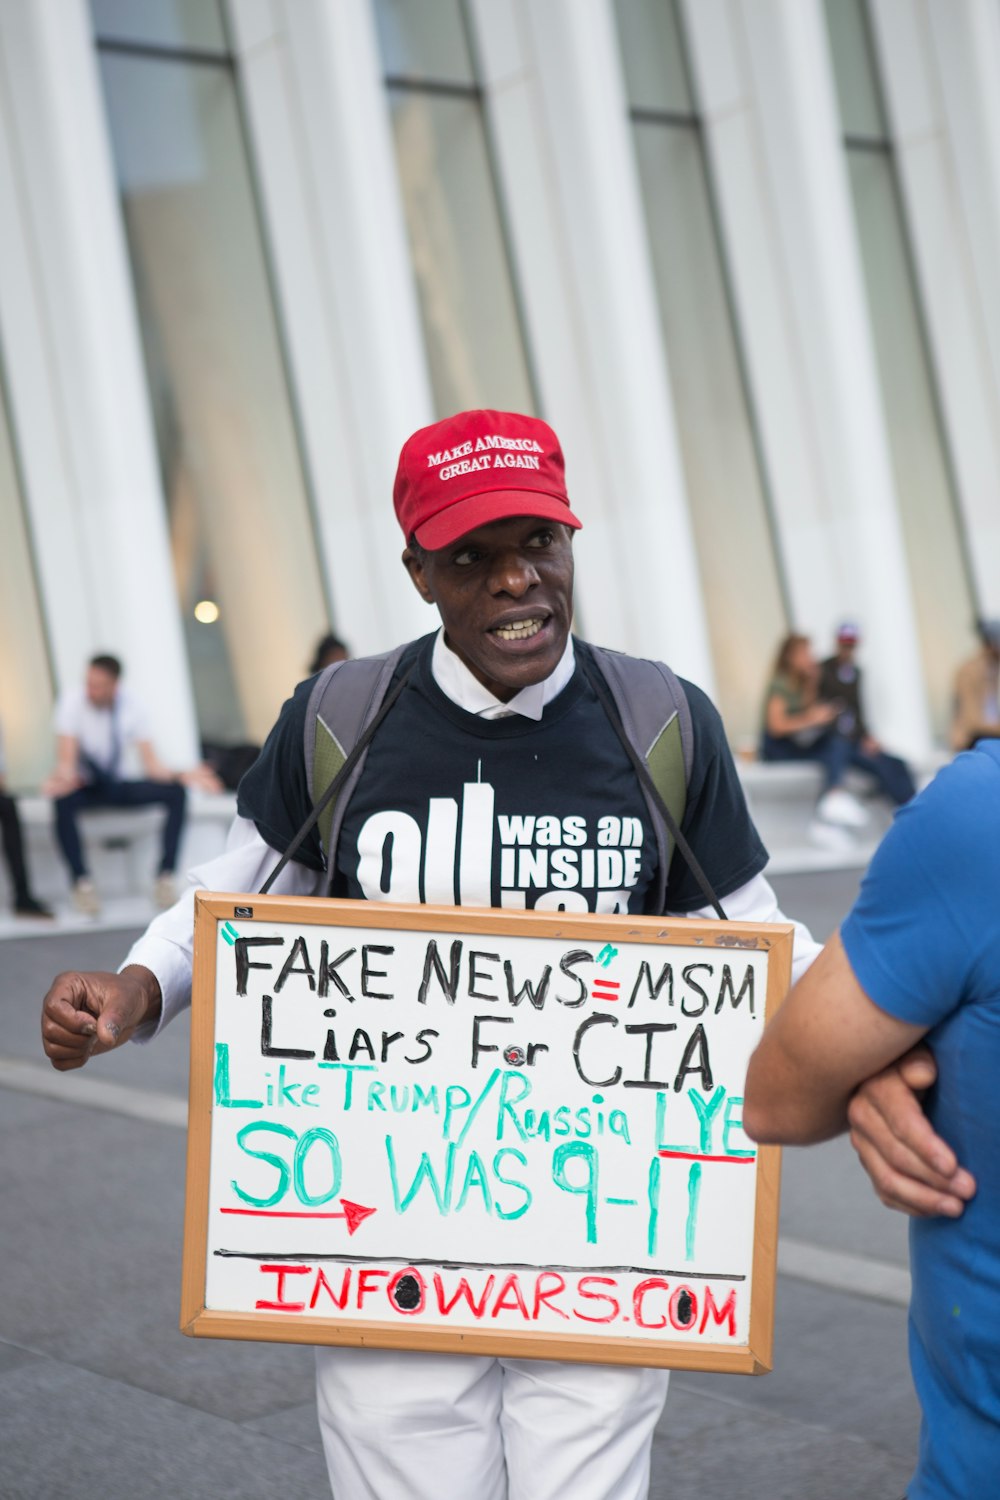 Mann im schwarz-weißen Hemd mit rotem Make America great again Kappe mit Fake News=MSM-Schild in der Nähe des weißen Gebäudes